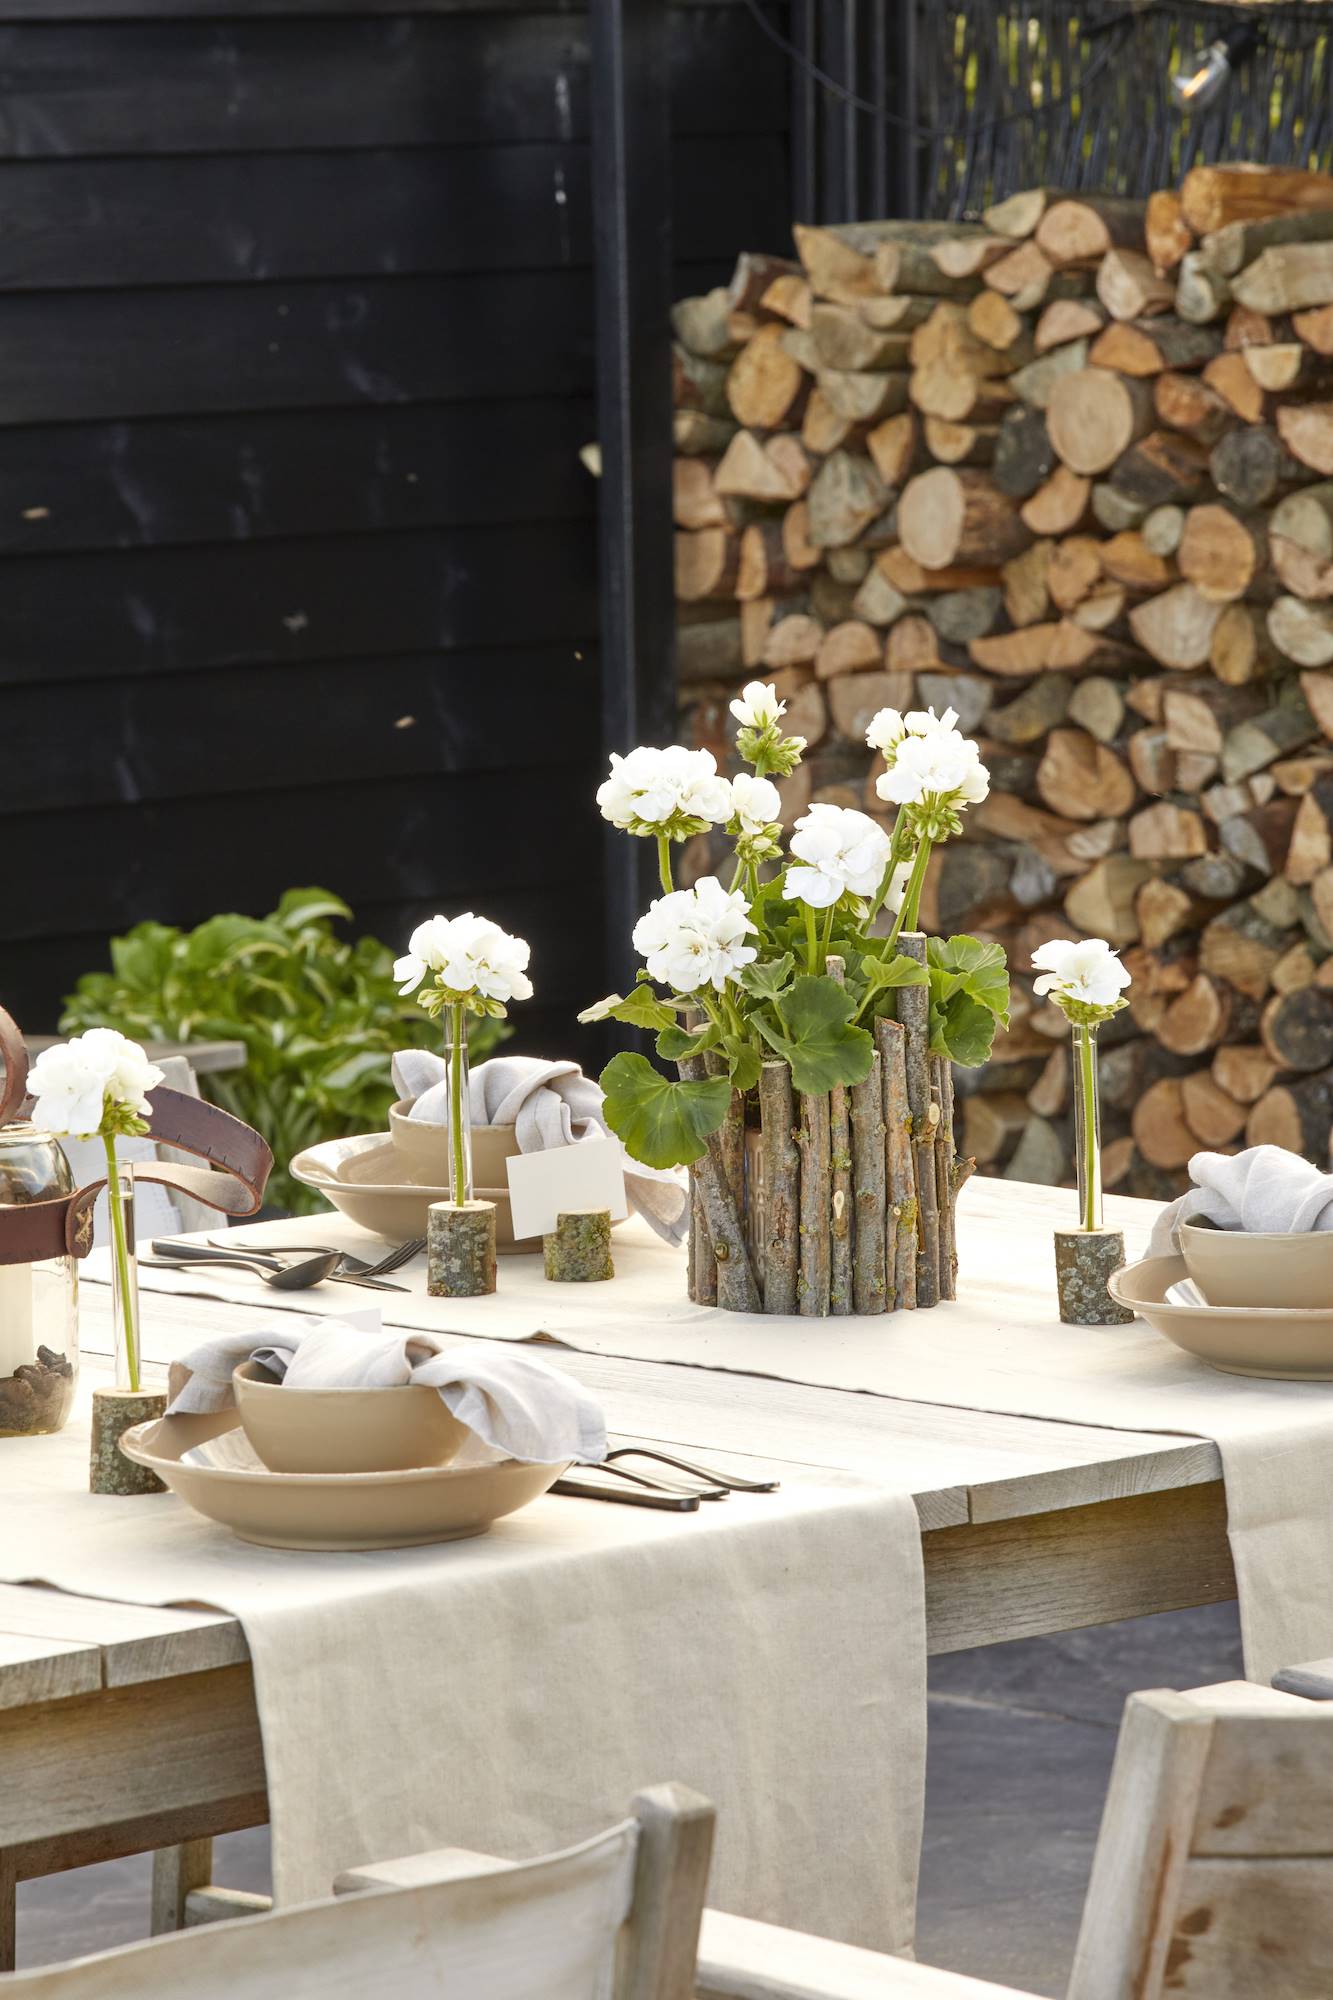 Mesa de verano con geranios e ideas de manualidades con un estilo fresco y natural